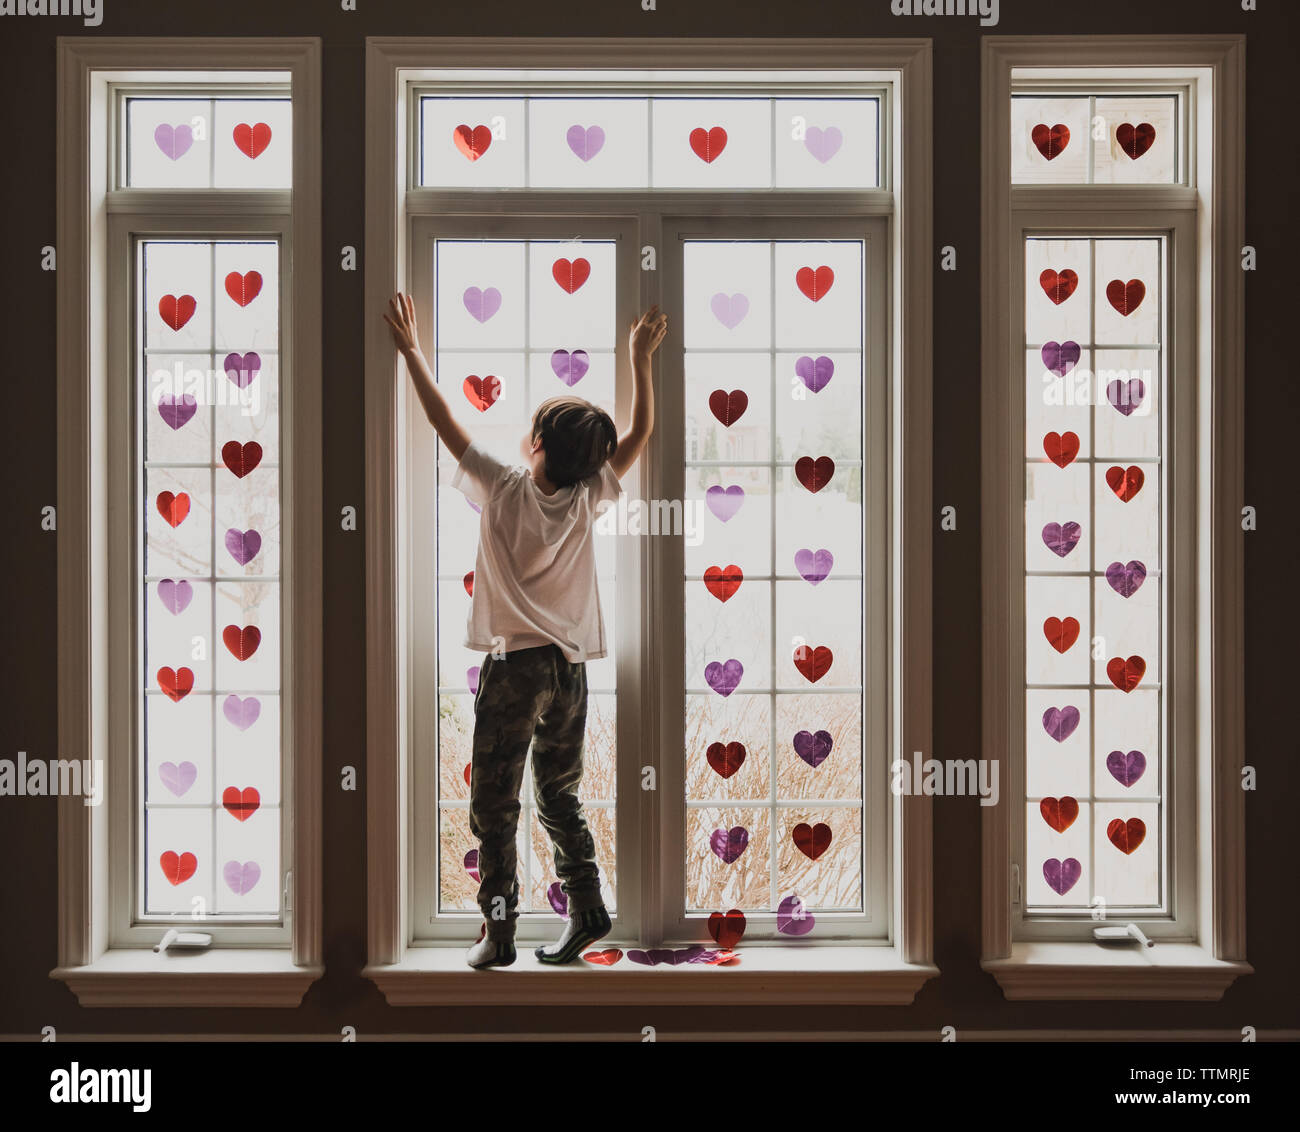 Chico parado en el alféizar de ventanas cubiertas de pequeños corazones brillantes. Foto de stock